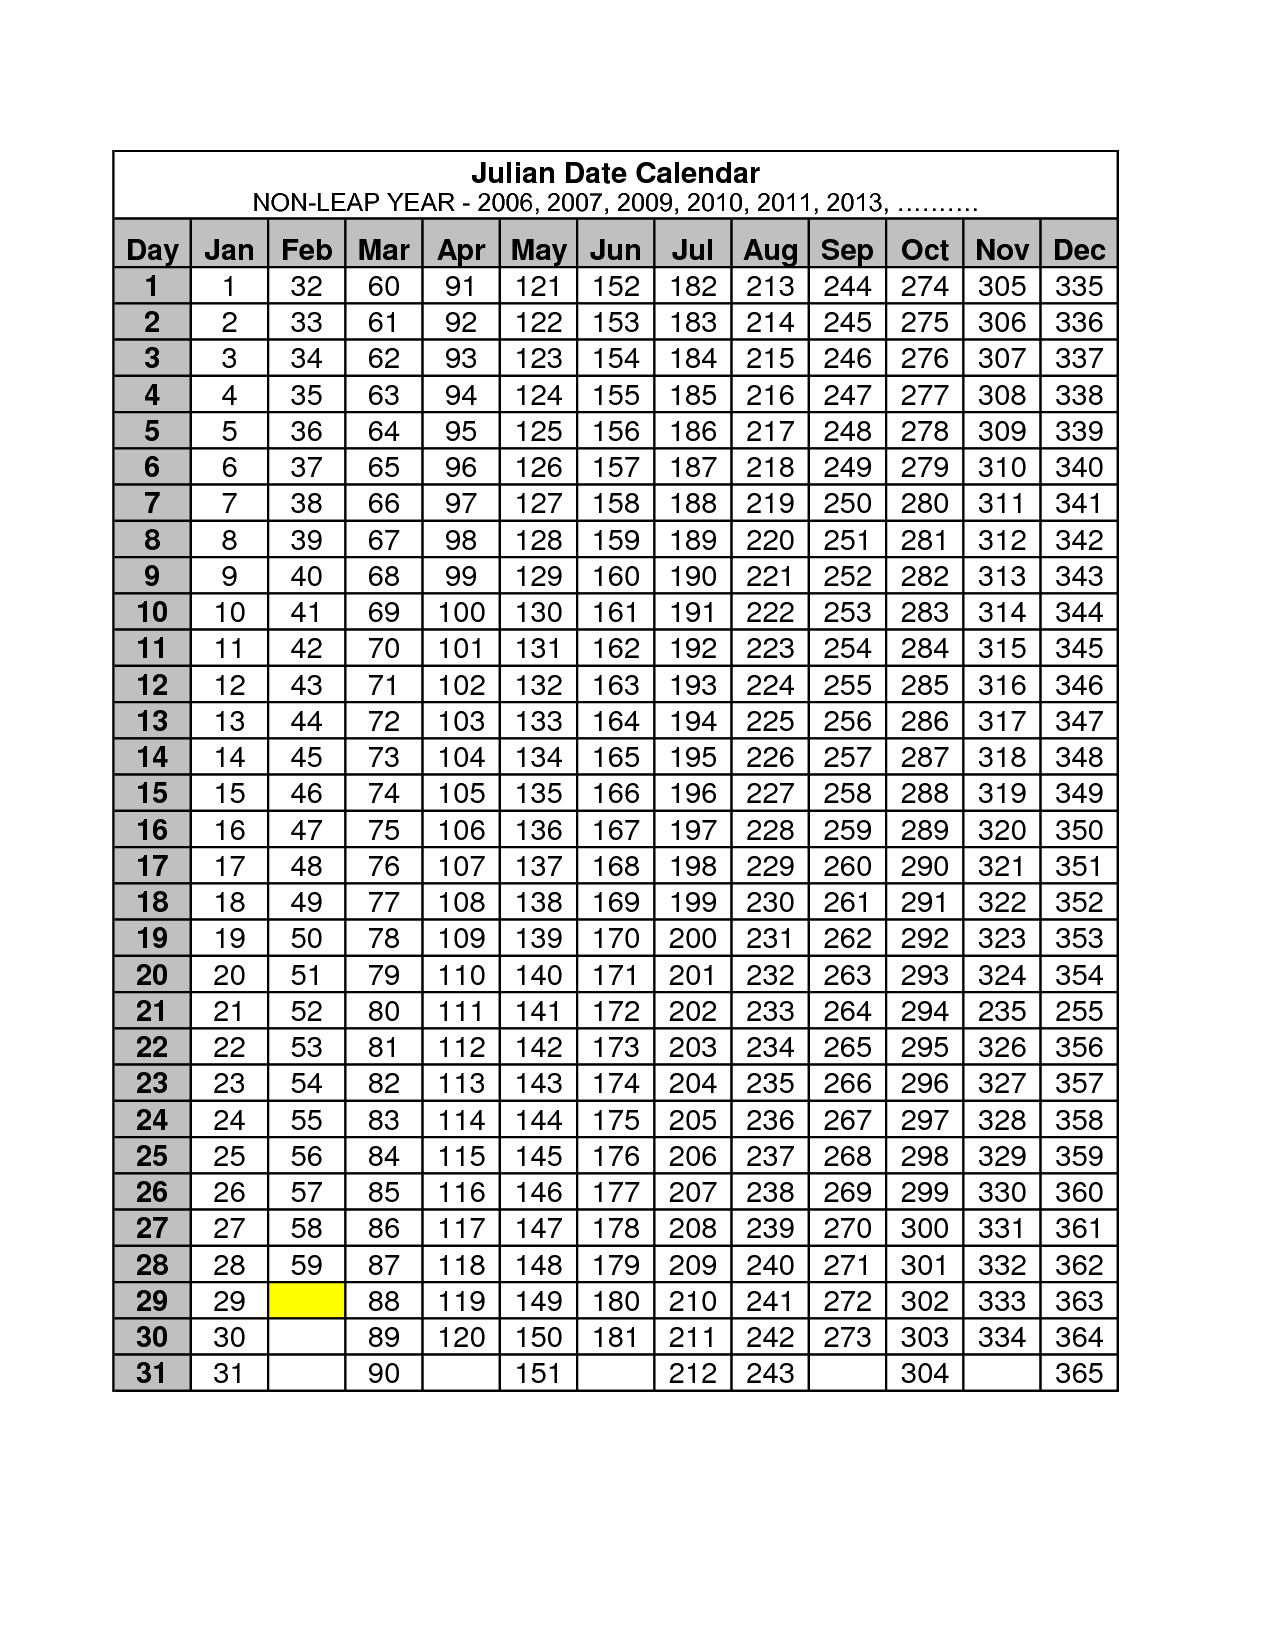 2013 Julian Date Calendar Quadax | Calendar Blank For May 2015 intended for Julian Calendar Quadax 2020